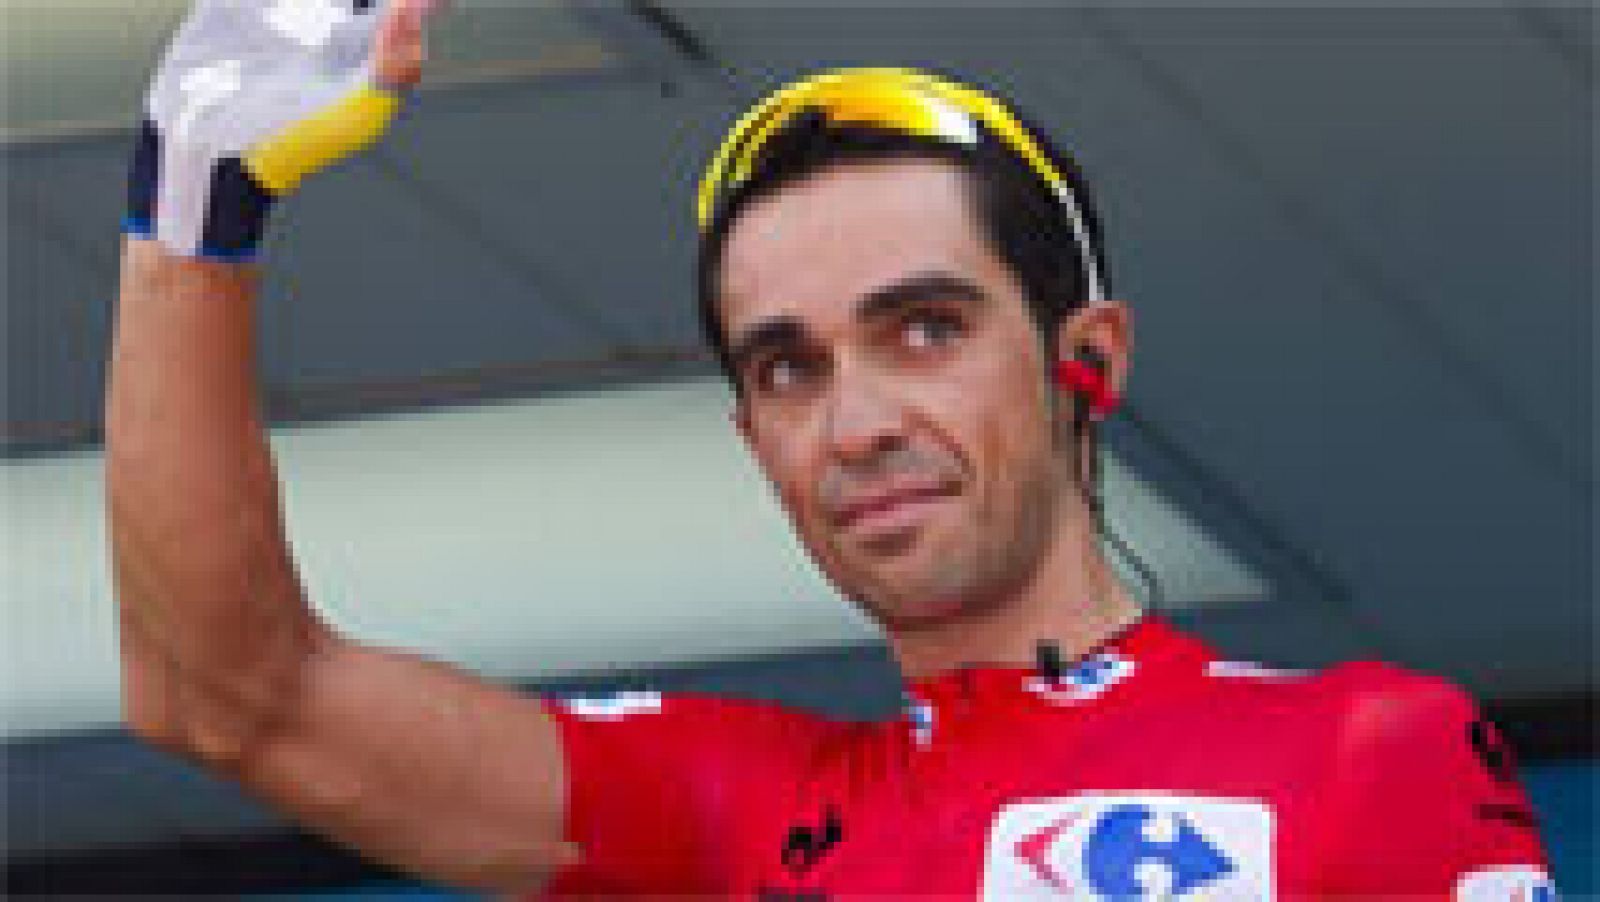 En la vuelta a España, jornada de descanso para recuperar fuerzas y afrontar las últimas y definitivas etapas en Galicia. Contador, que está como en los mejores momentos, acaba de confirmar que no participará en el Mundial de Ponferrada.